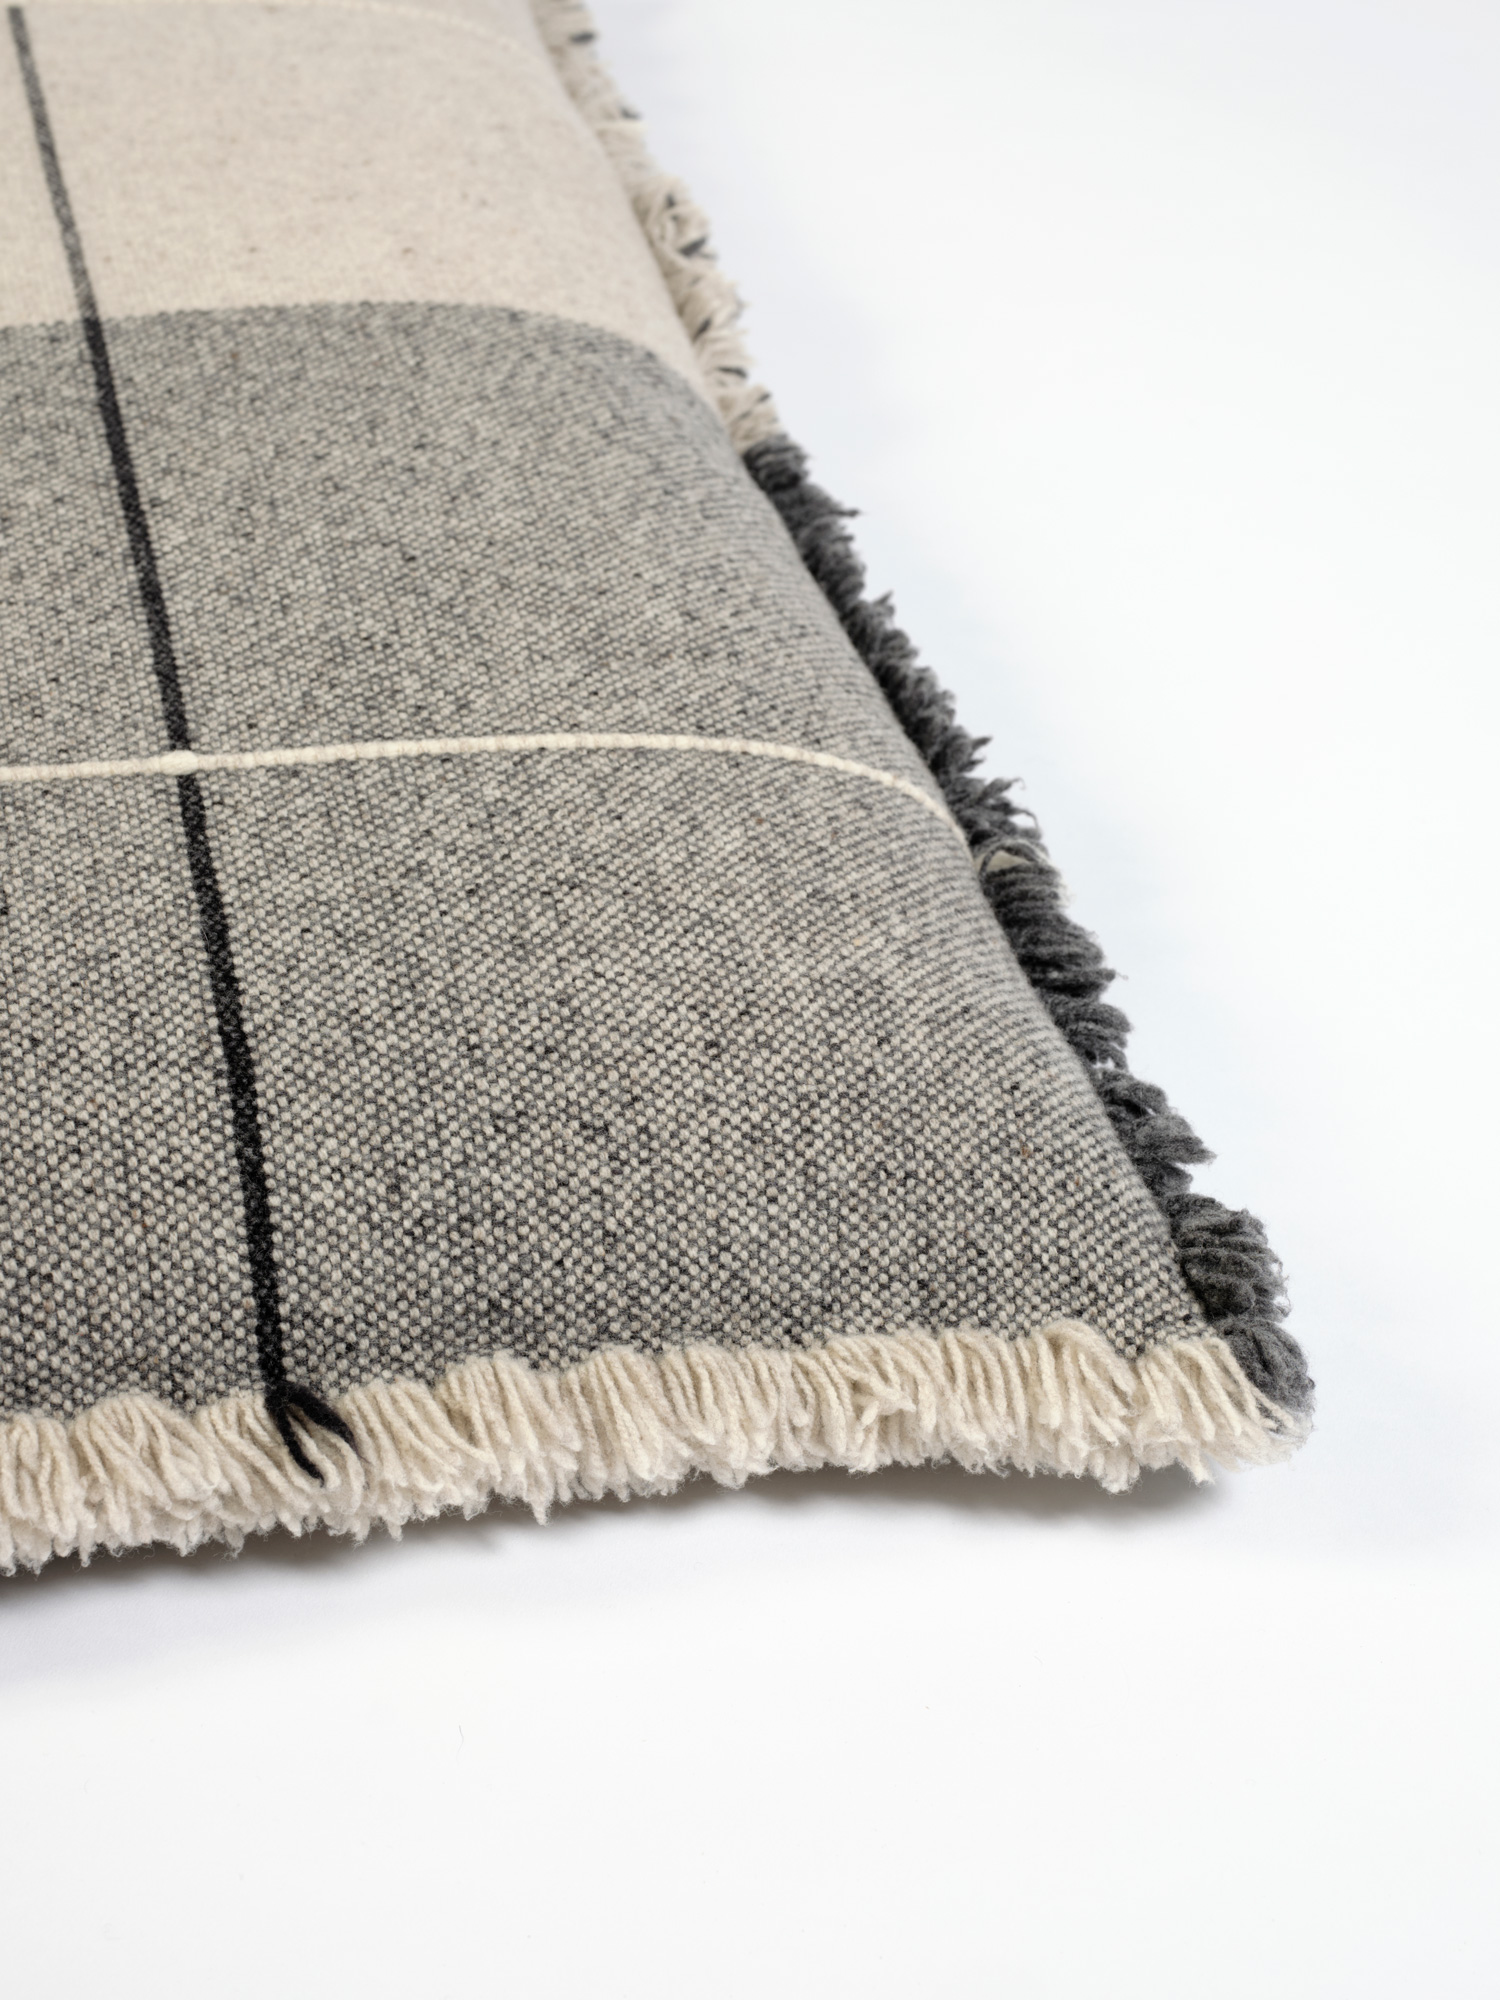 Cojin de suelo en lana merino en cuadros grises oscuros y claros 